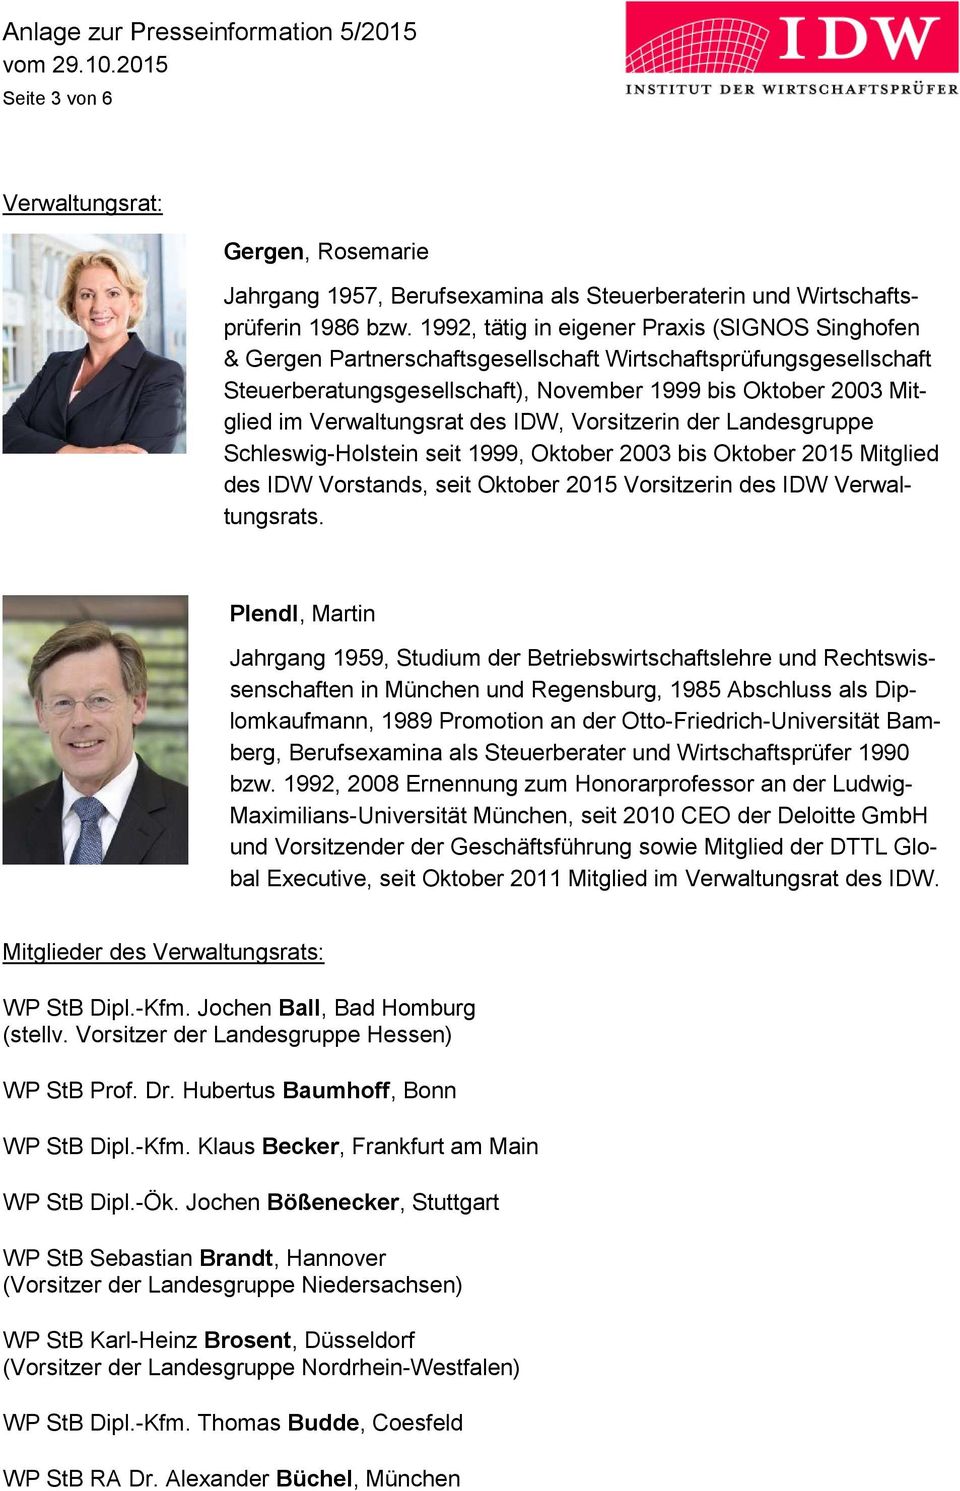 Verwaltungsrat des IDW, Vorsitzerin der Landesgruppe Schleswig-Holstein seit 1999, Oktober 2003 bis Oktober 2015 Mitglied des IDW Vorstands, seit Oktober 2015 Vorsitzerin des IDW Verwaltungsrats.